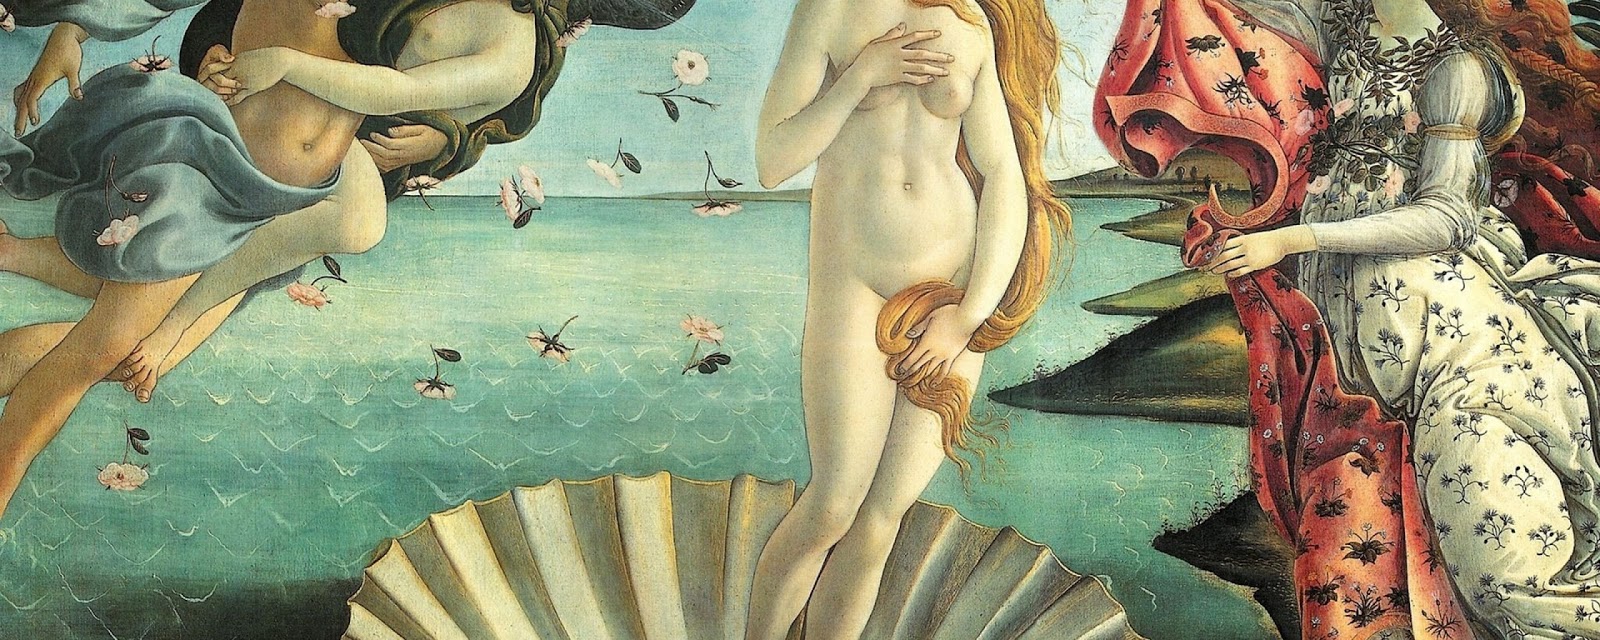 Sandro+Botticelli-1445-1510 (89).jpg